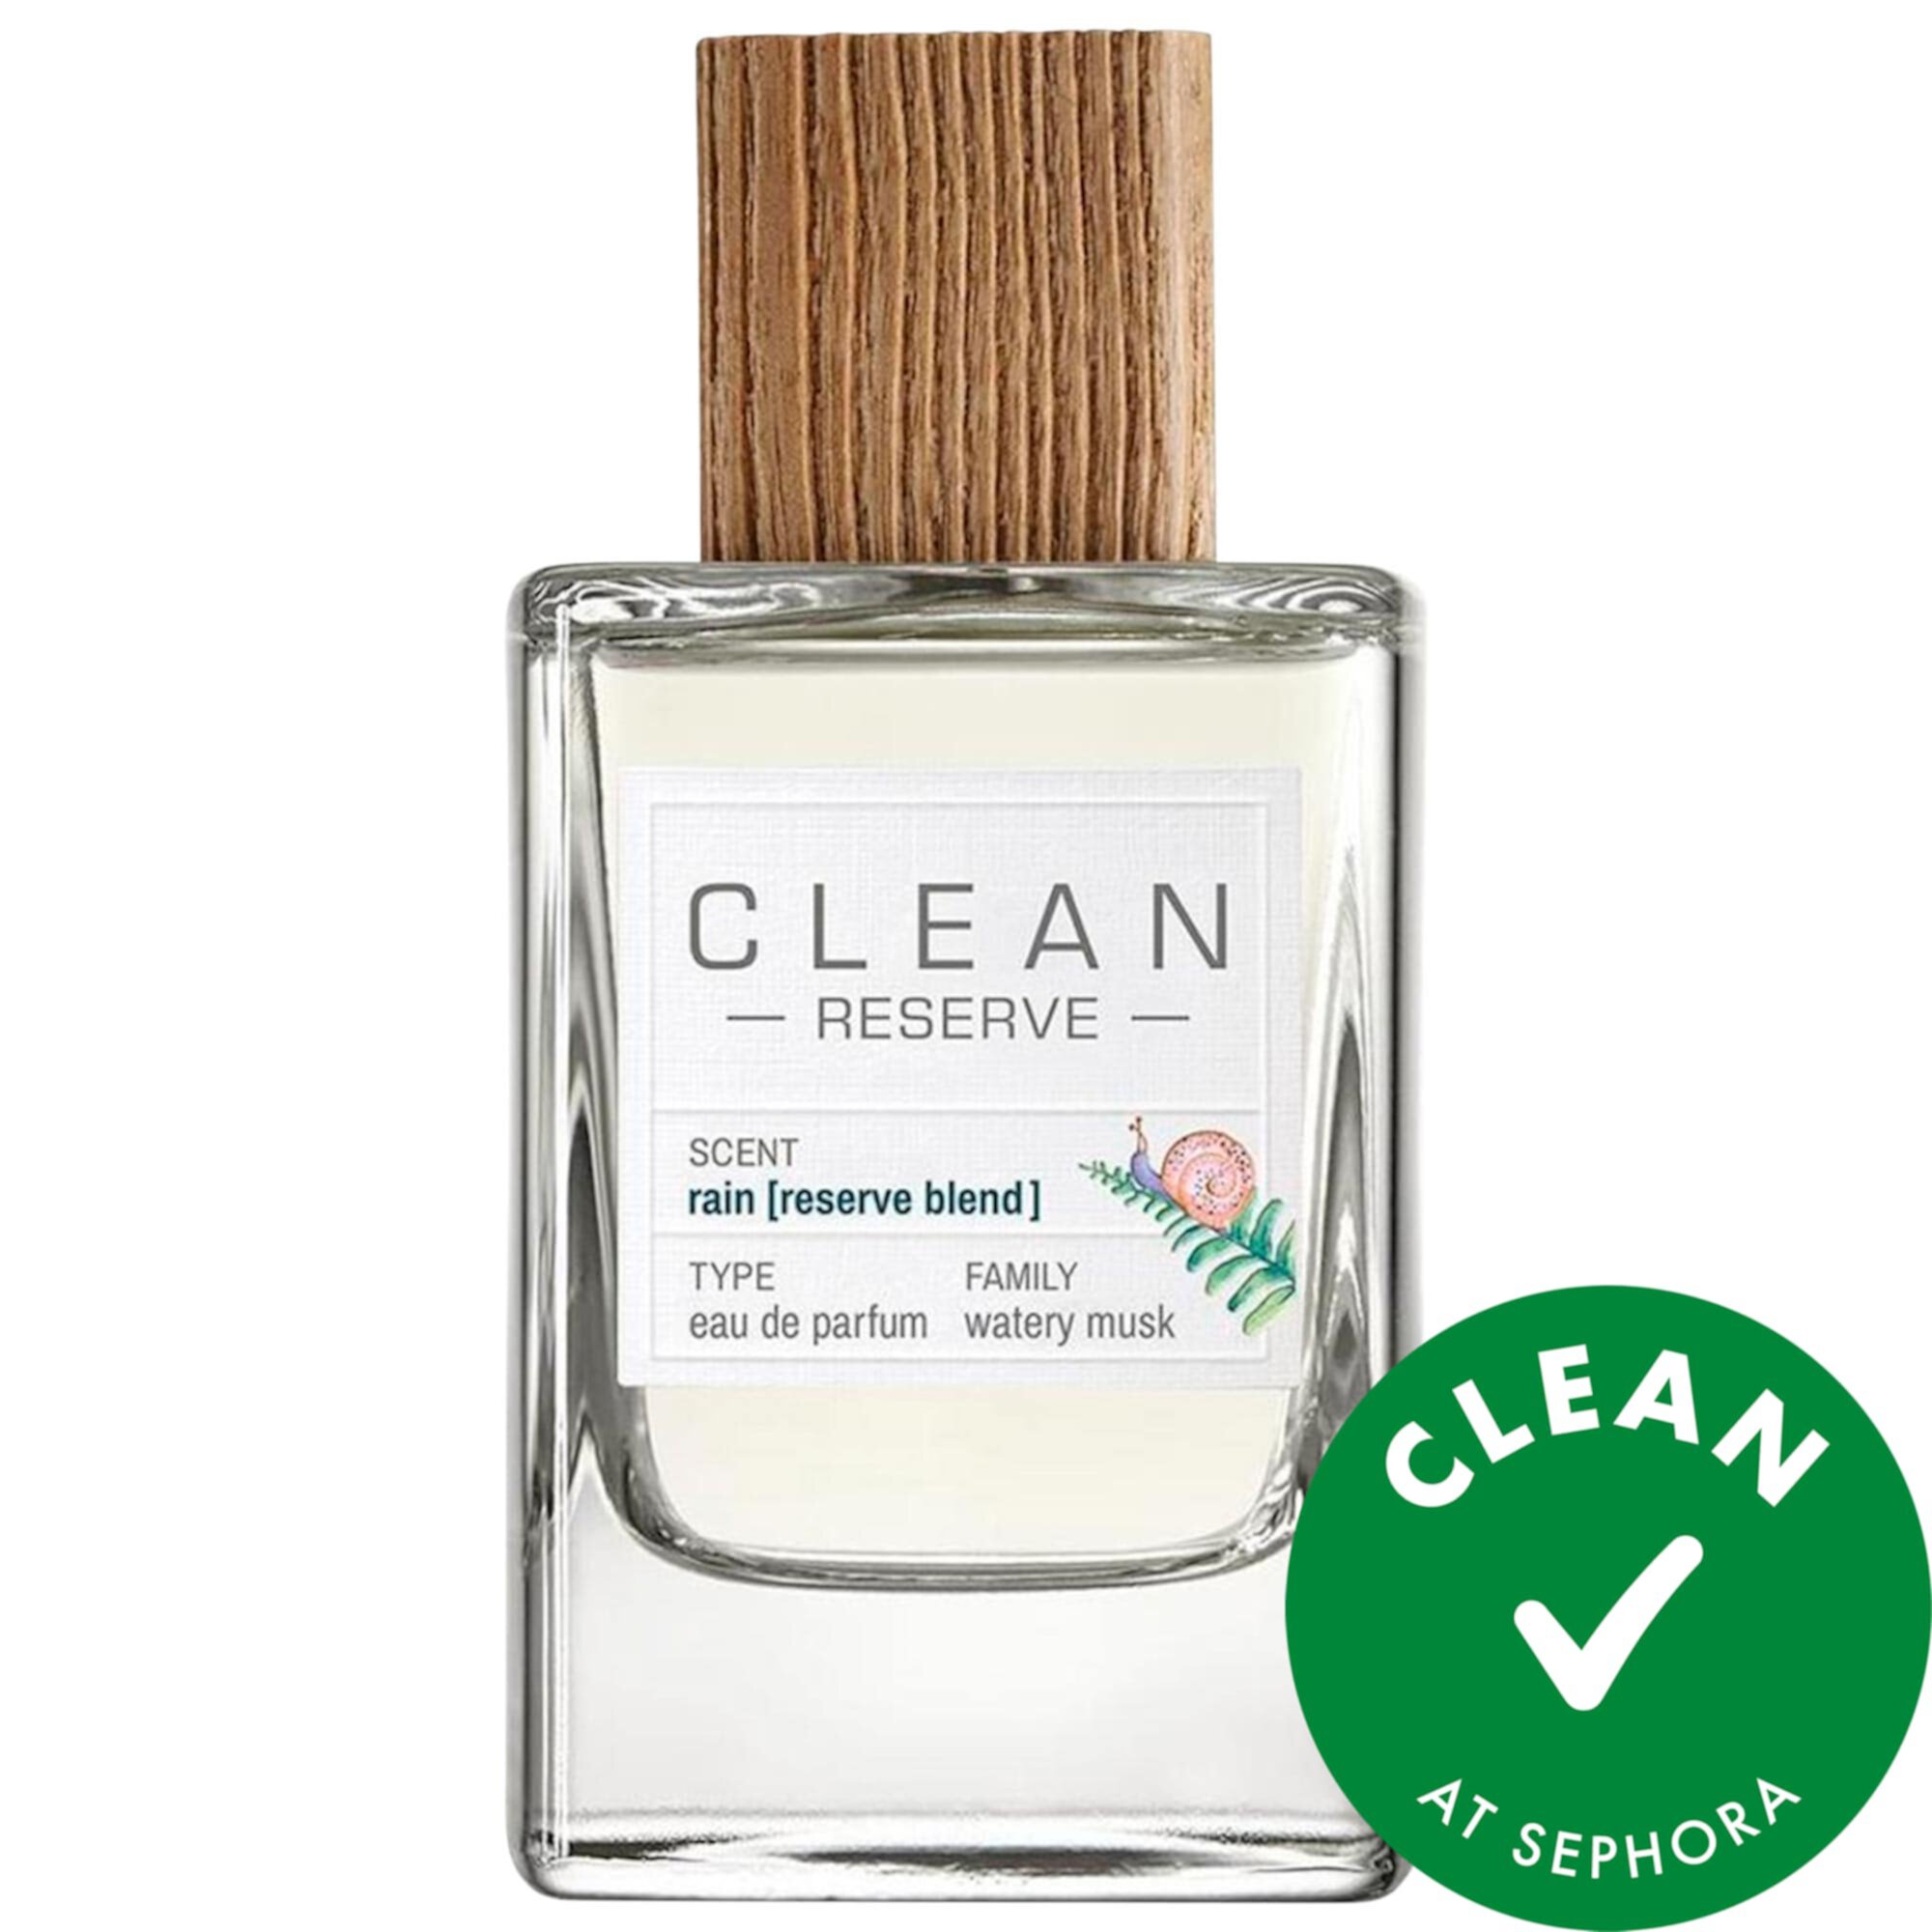 Limited Edition Reserve - Rain Eau de Parfum CLEAN RESERVE